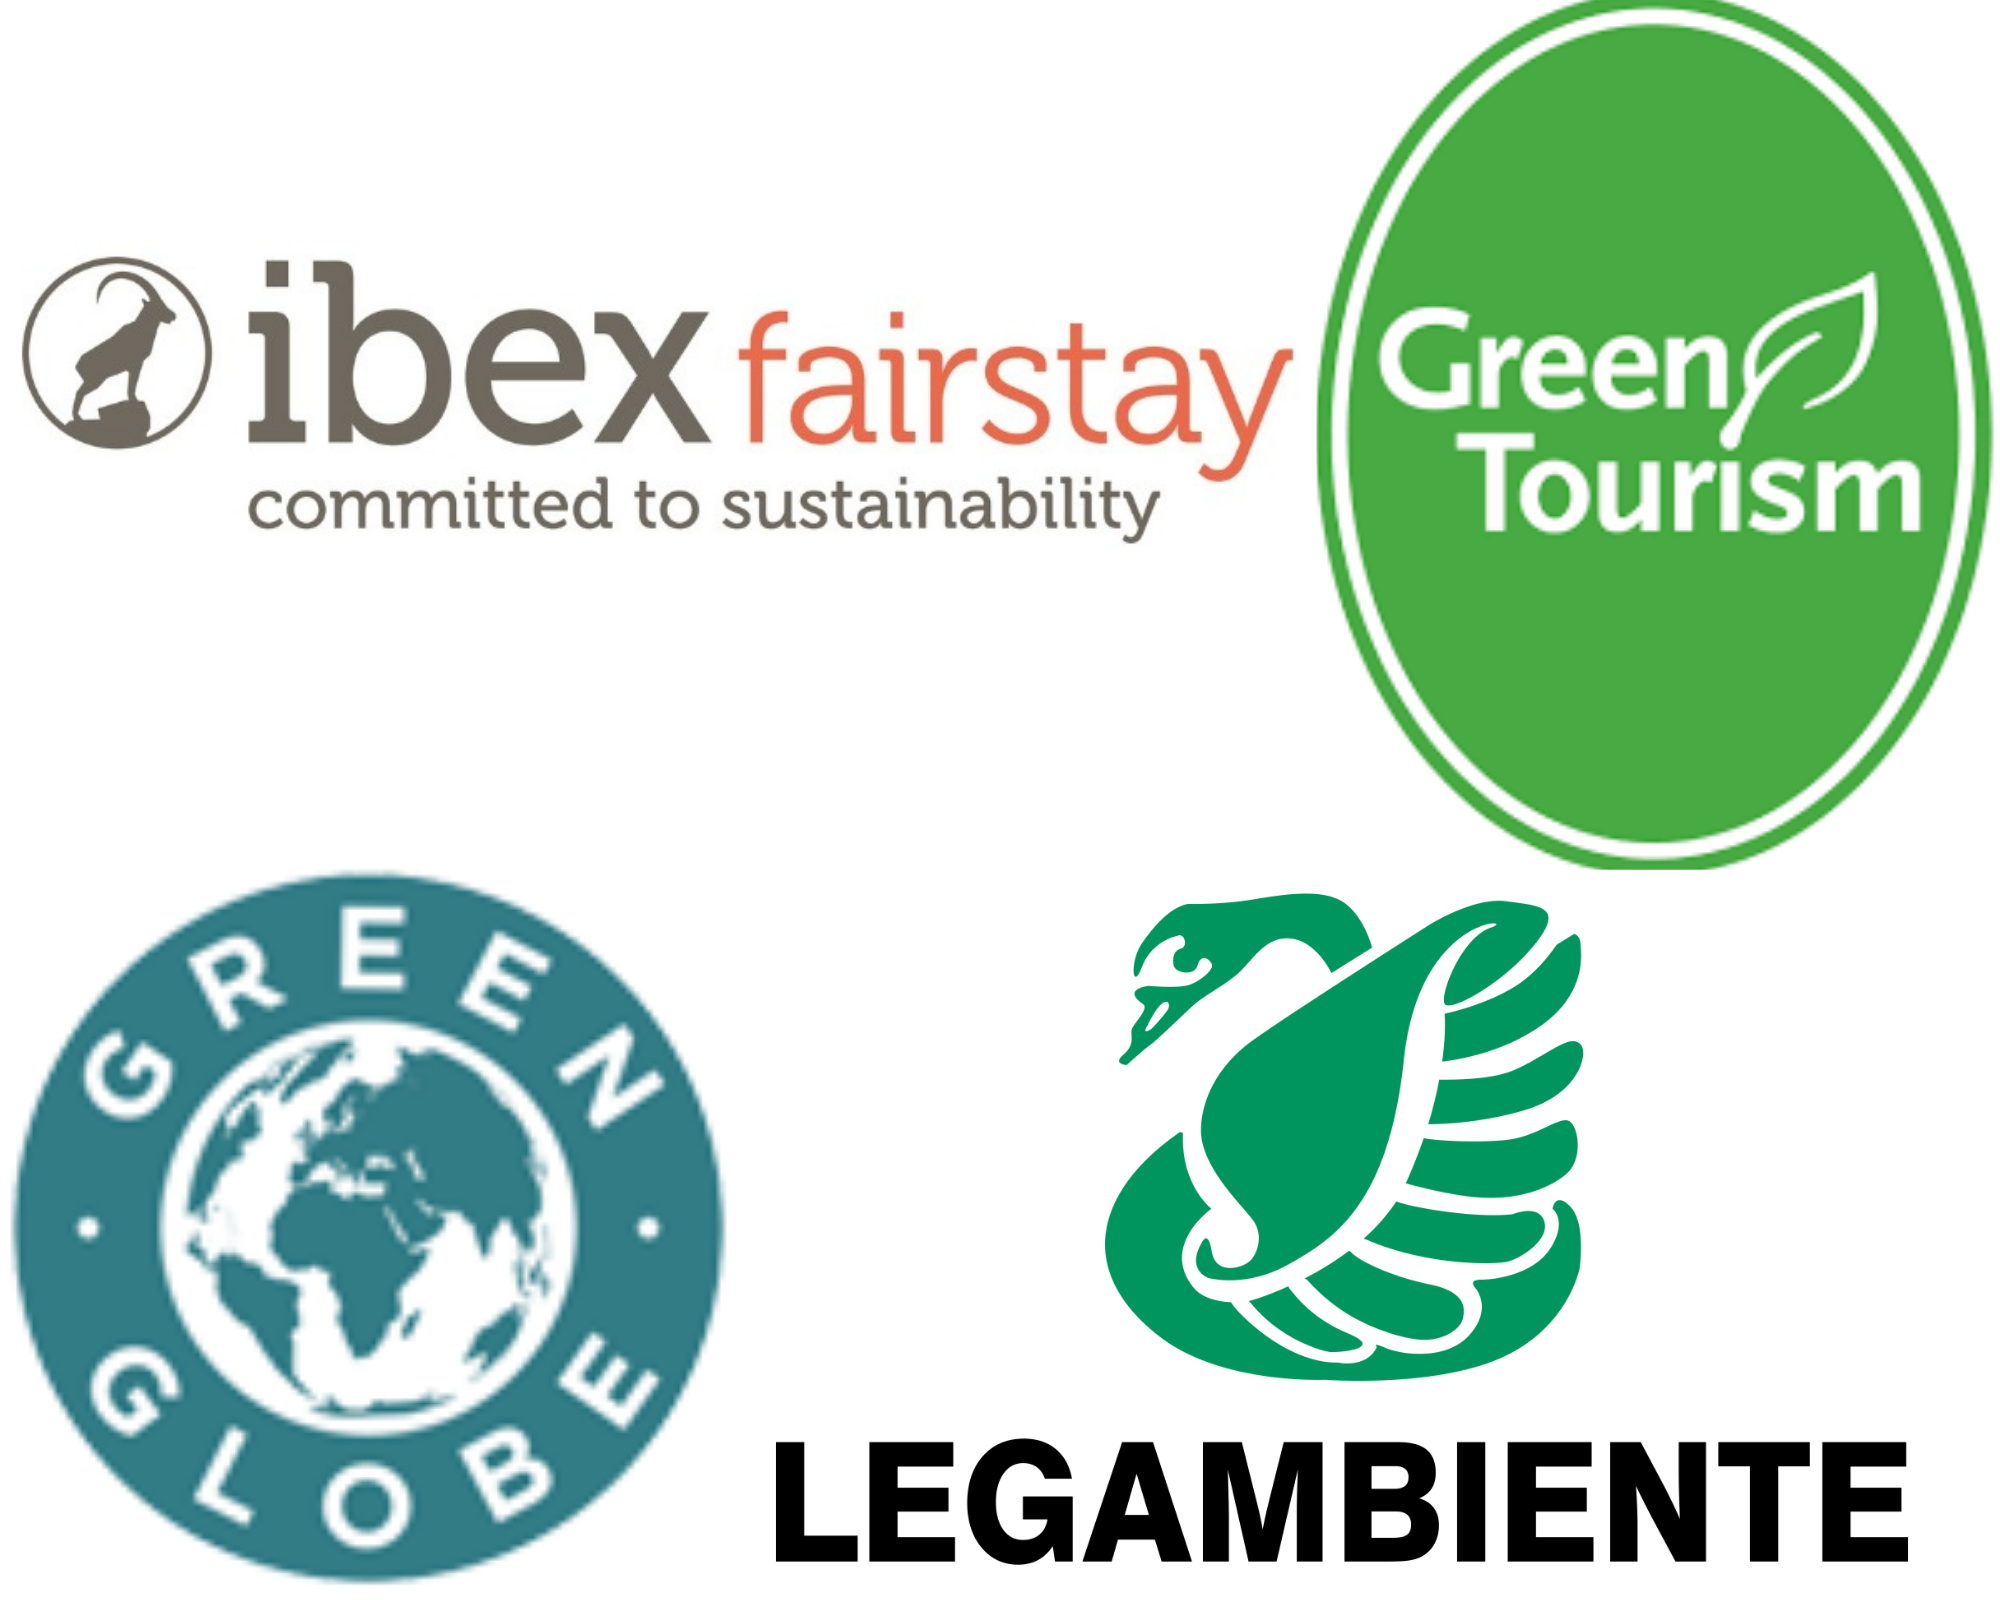 eco labels tourism